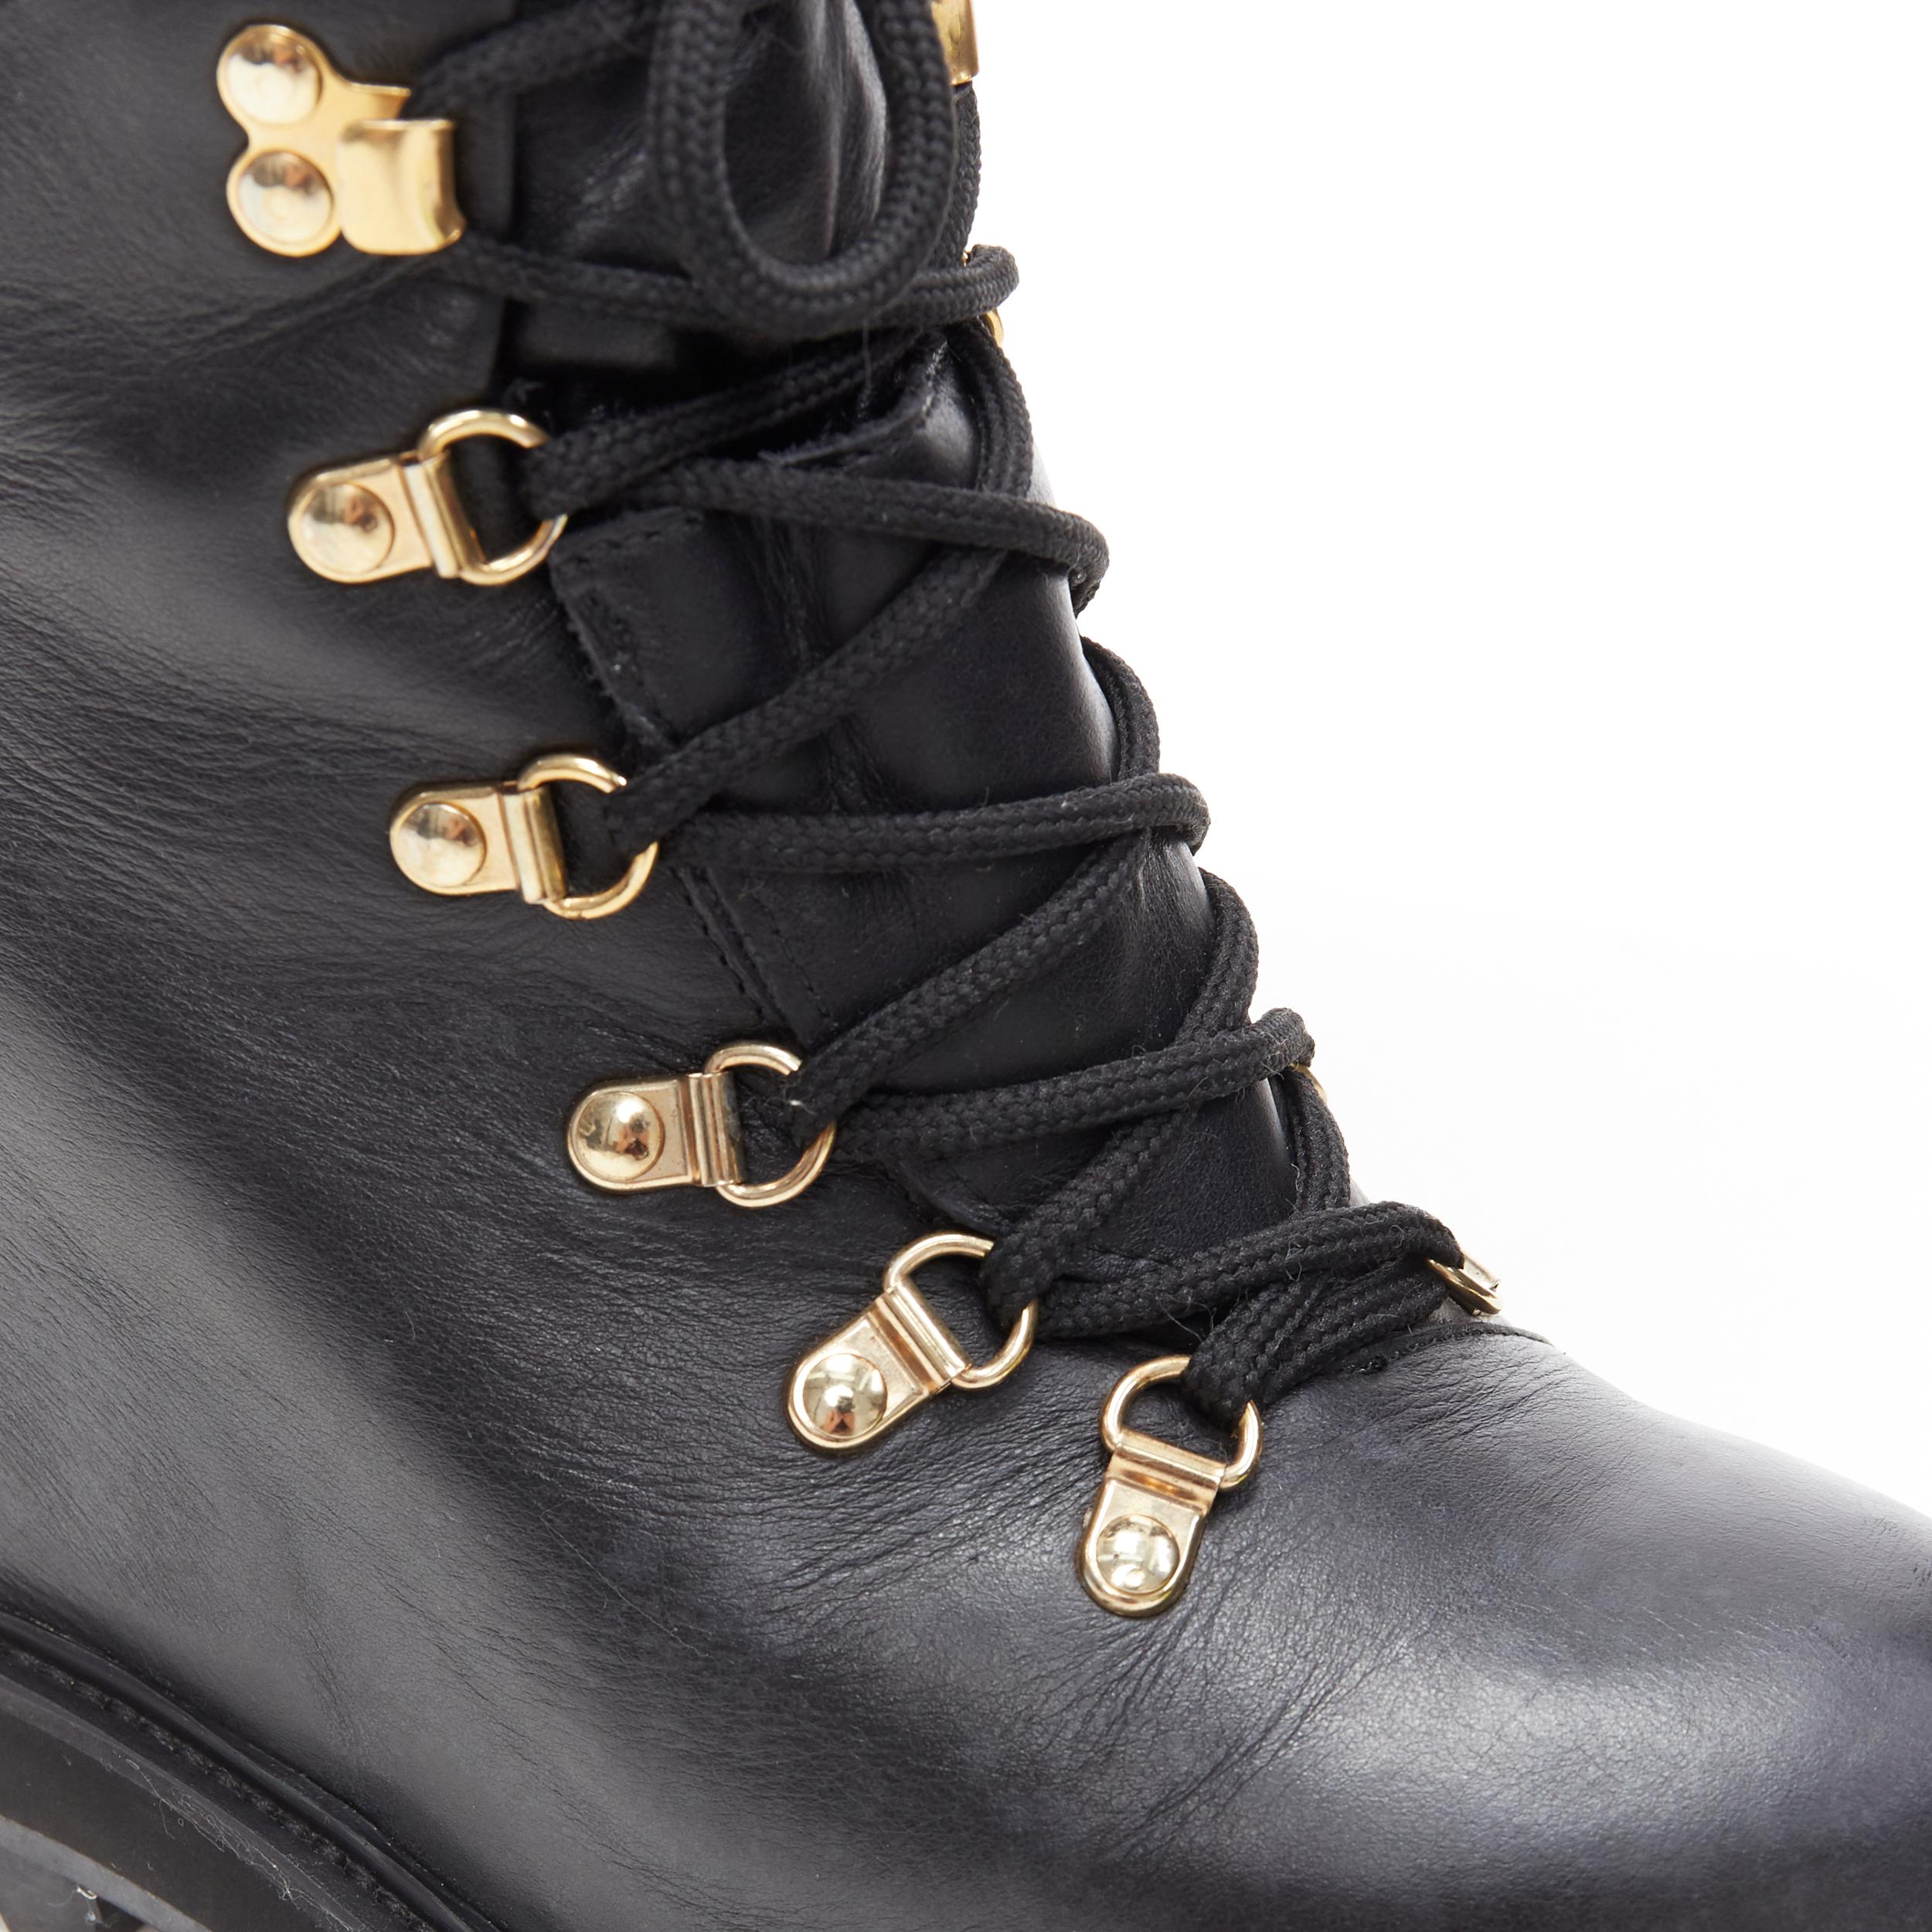 MONCLER black leather concealed high heel wedge paltform hiking ankle boot EU38 1